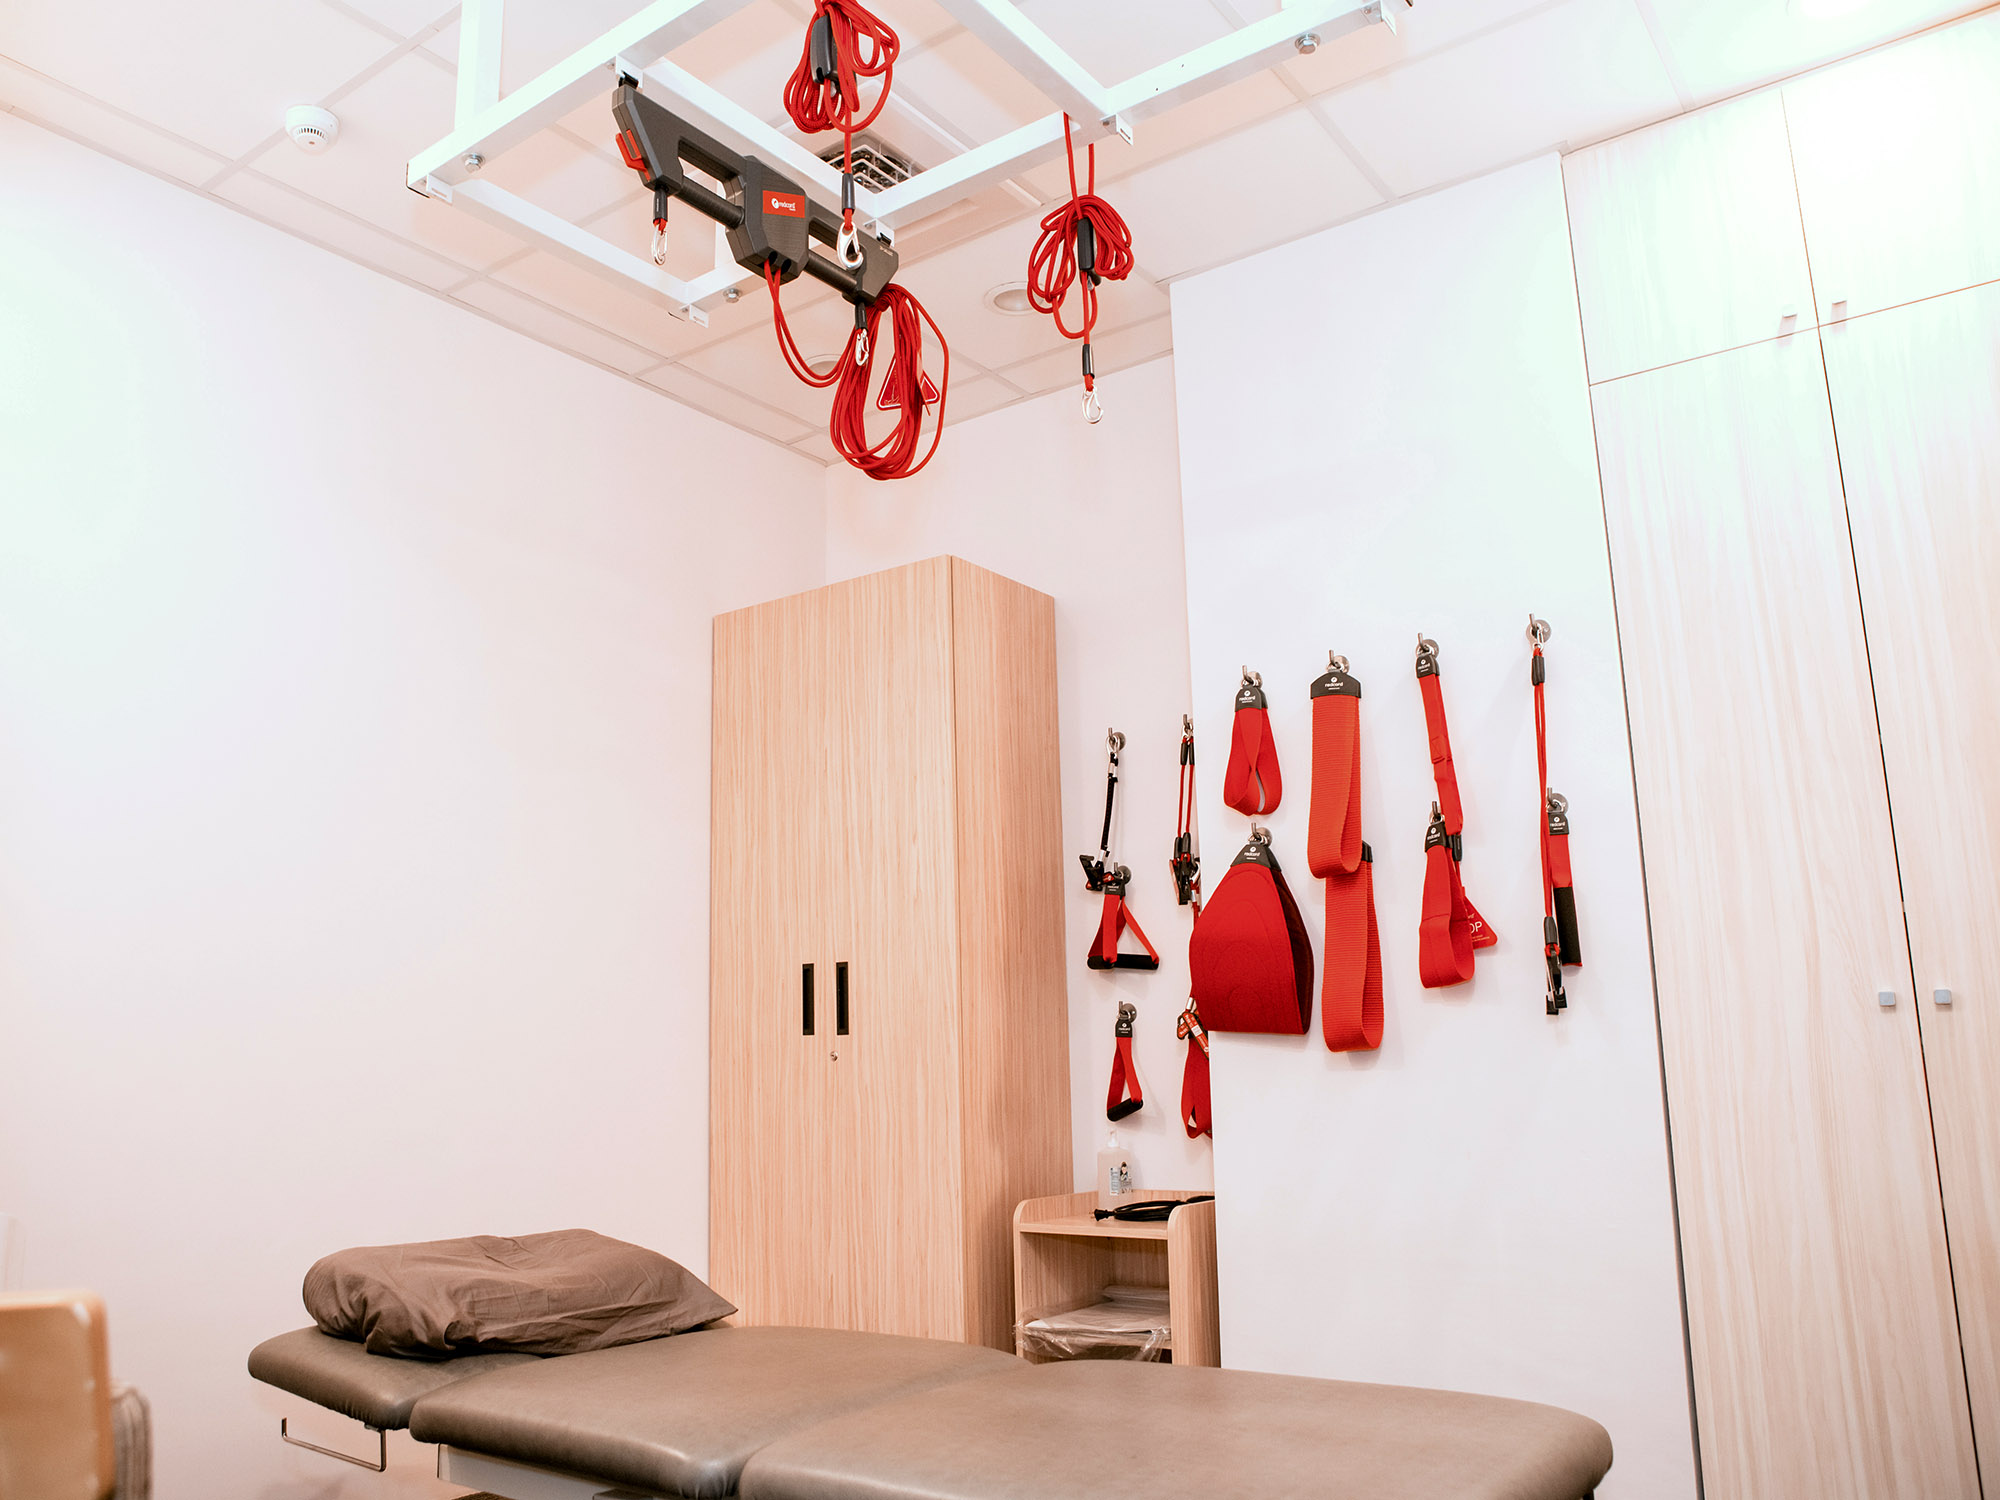 紅繩懸吊-台北市-中山區-內湖區-物理治療-運動治療-神經肌肉再教育